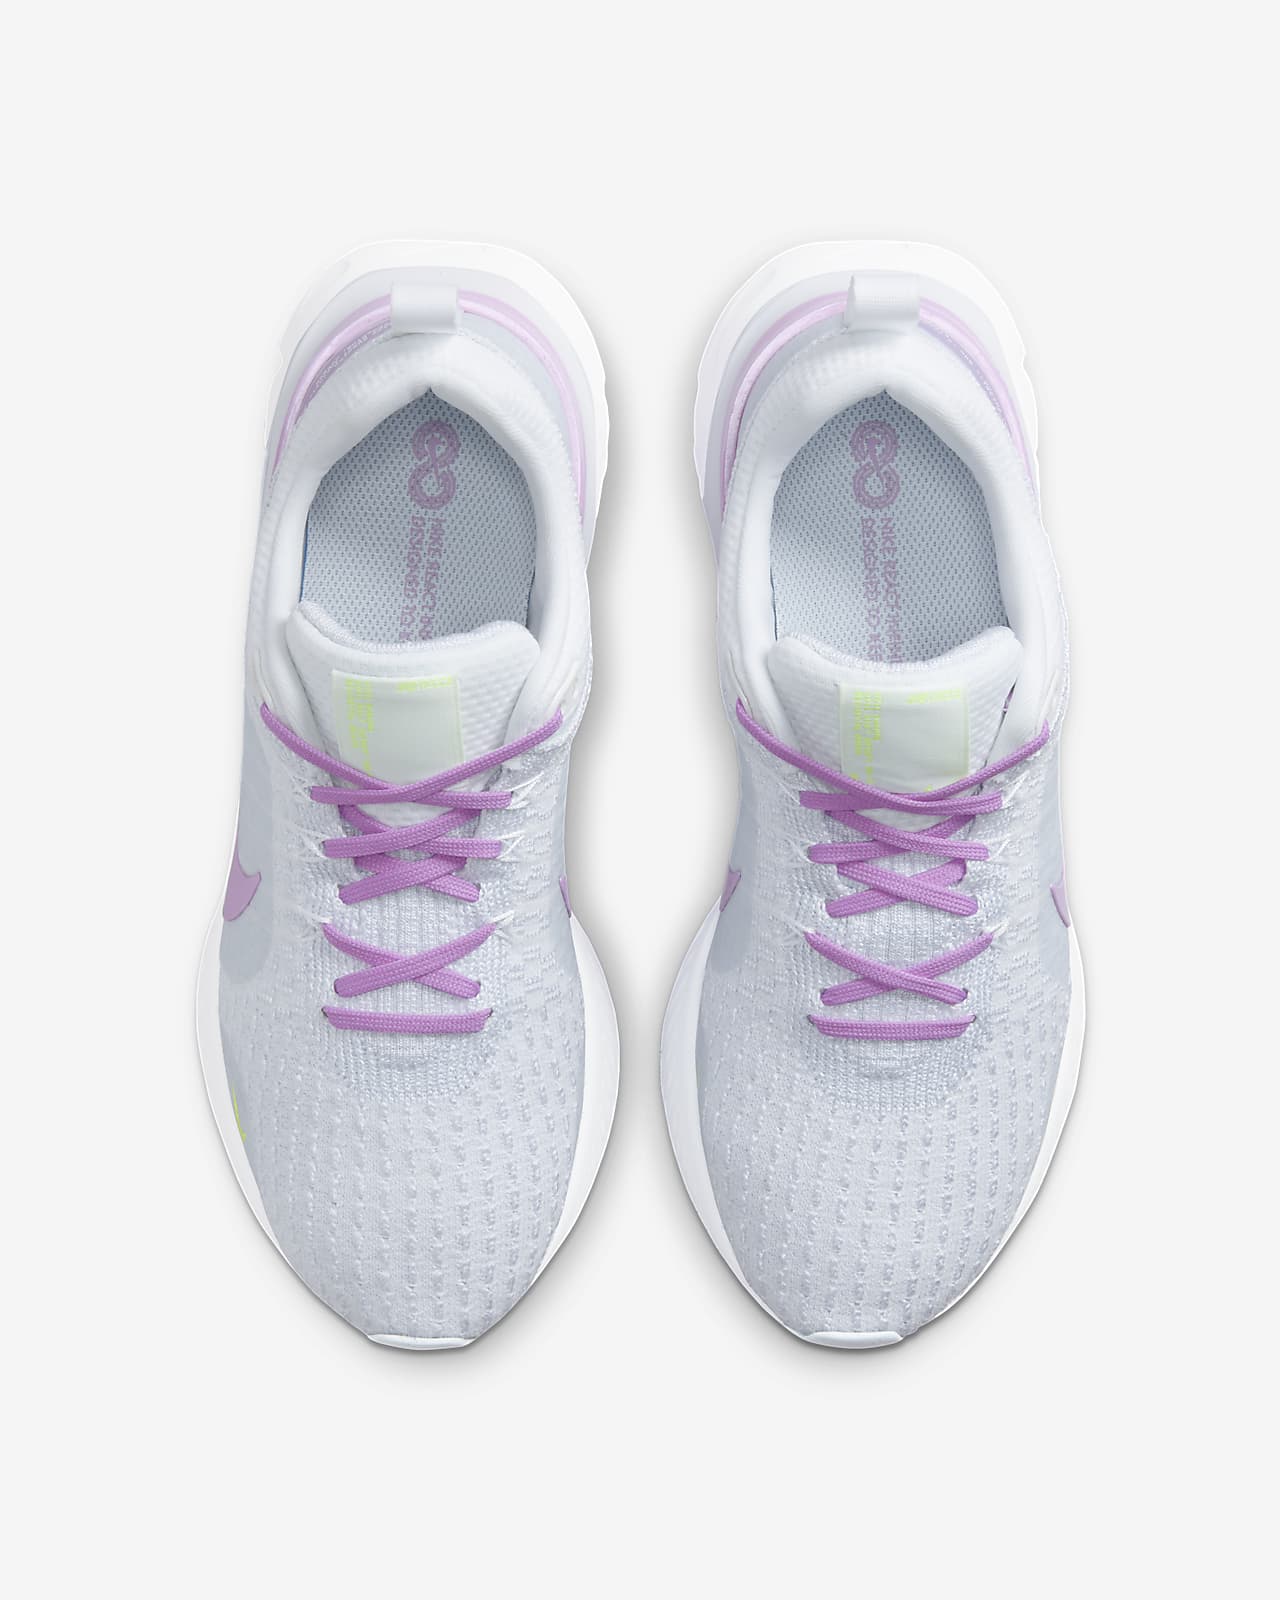 Nike Women's React Infinity 3 Running Shoes, Size 9, White/Fuschia